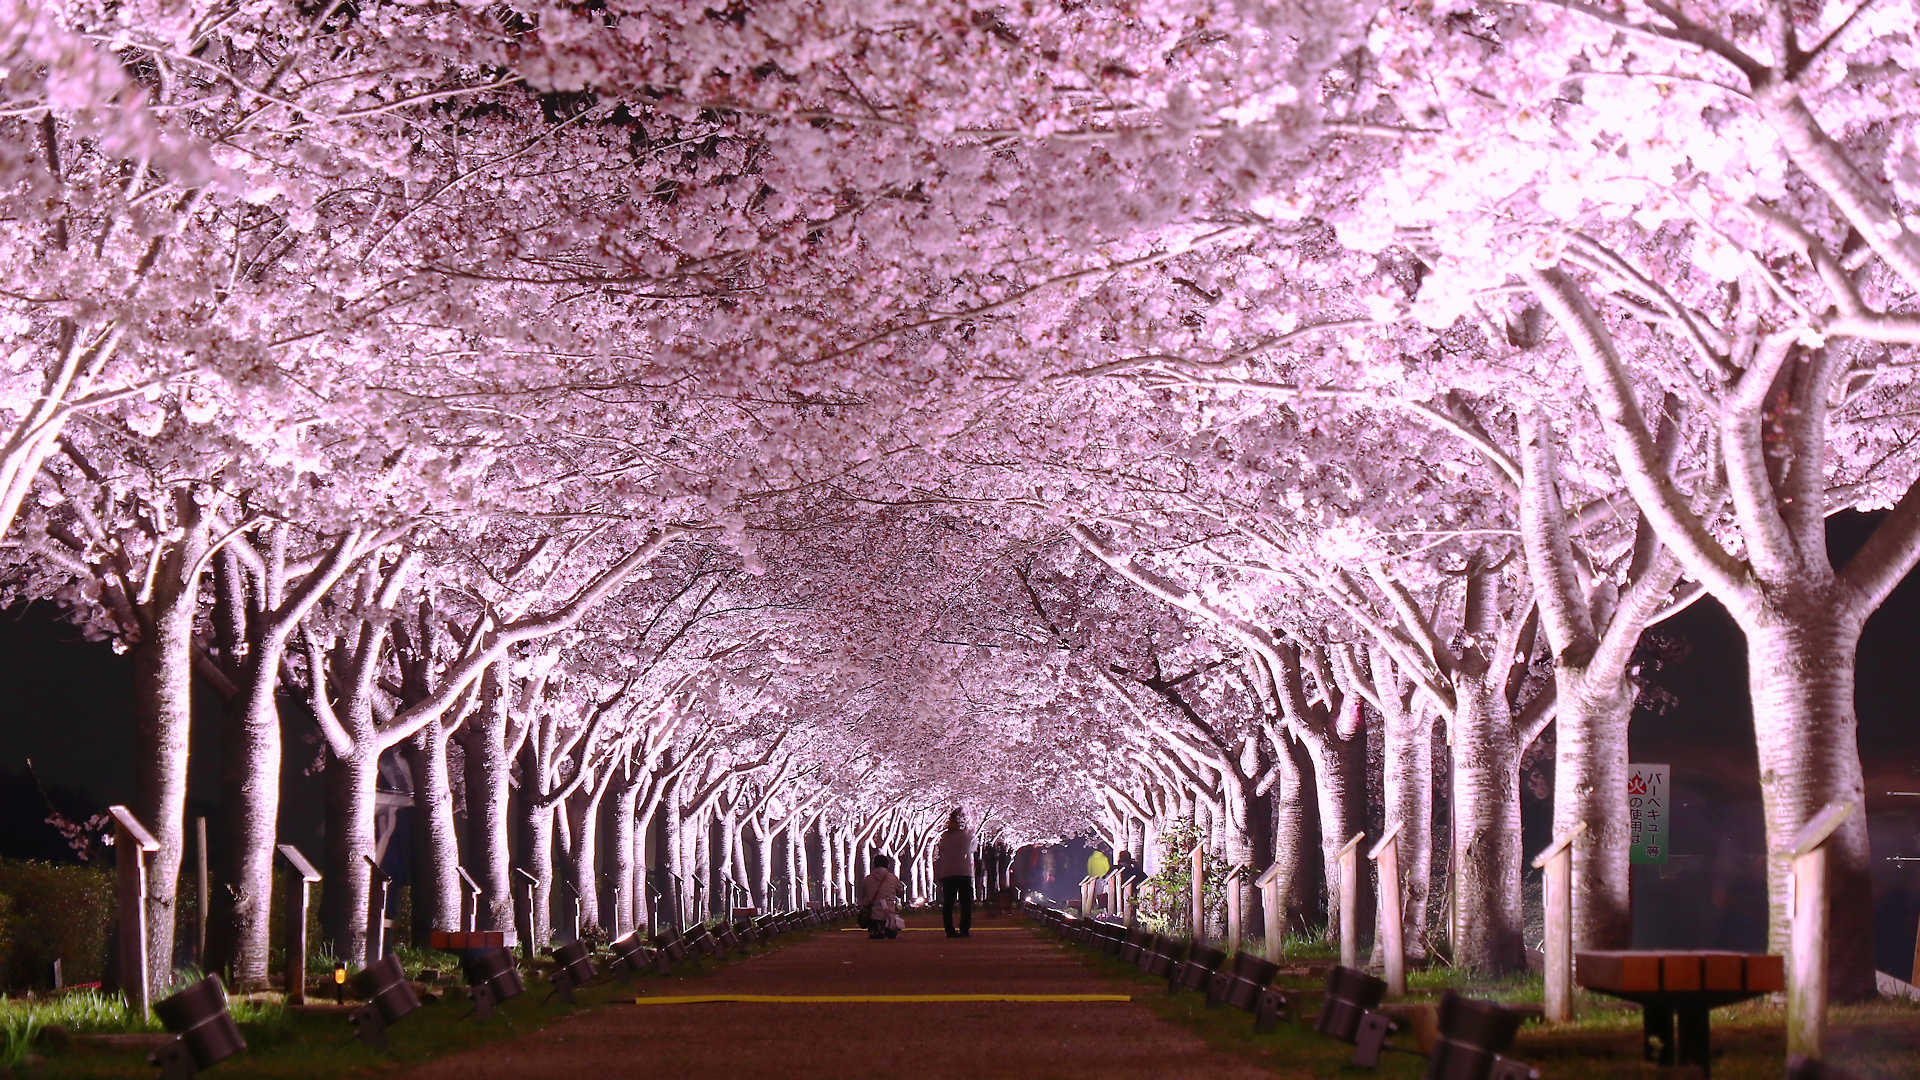 回廊 づつみ 小野 桜 「ふるさと桜づつみ回廊」と後世に引き継がれた想い～桜並木を見下ろしながらの約5㎞のドライブ！～